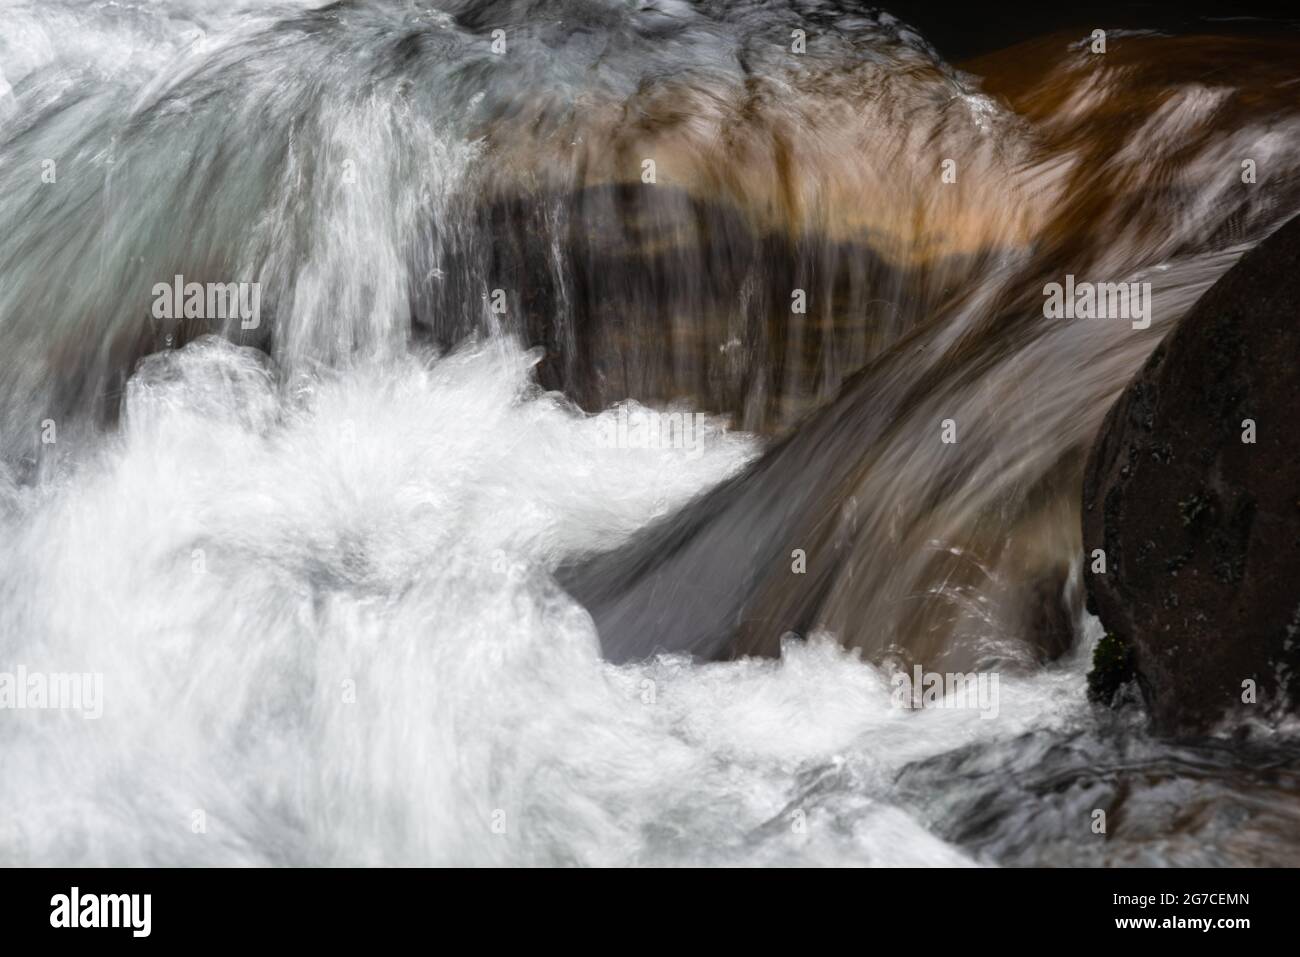 Les cascades de Tawhai se déversent et secouent les rochers, parc national de Tongariro, Nouvelle-Zélande Banque D'Images